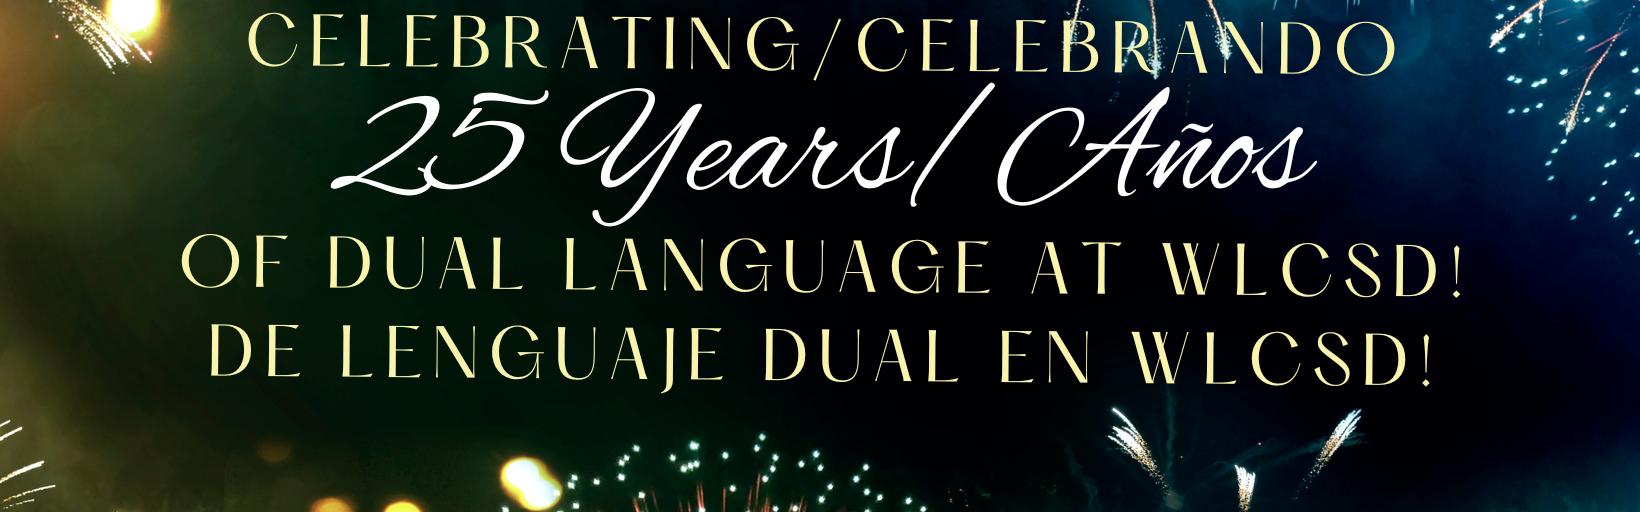 Celebrating 25 years of Dual Language